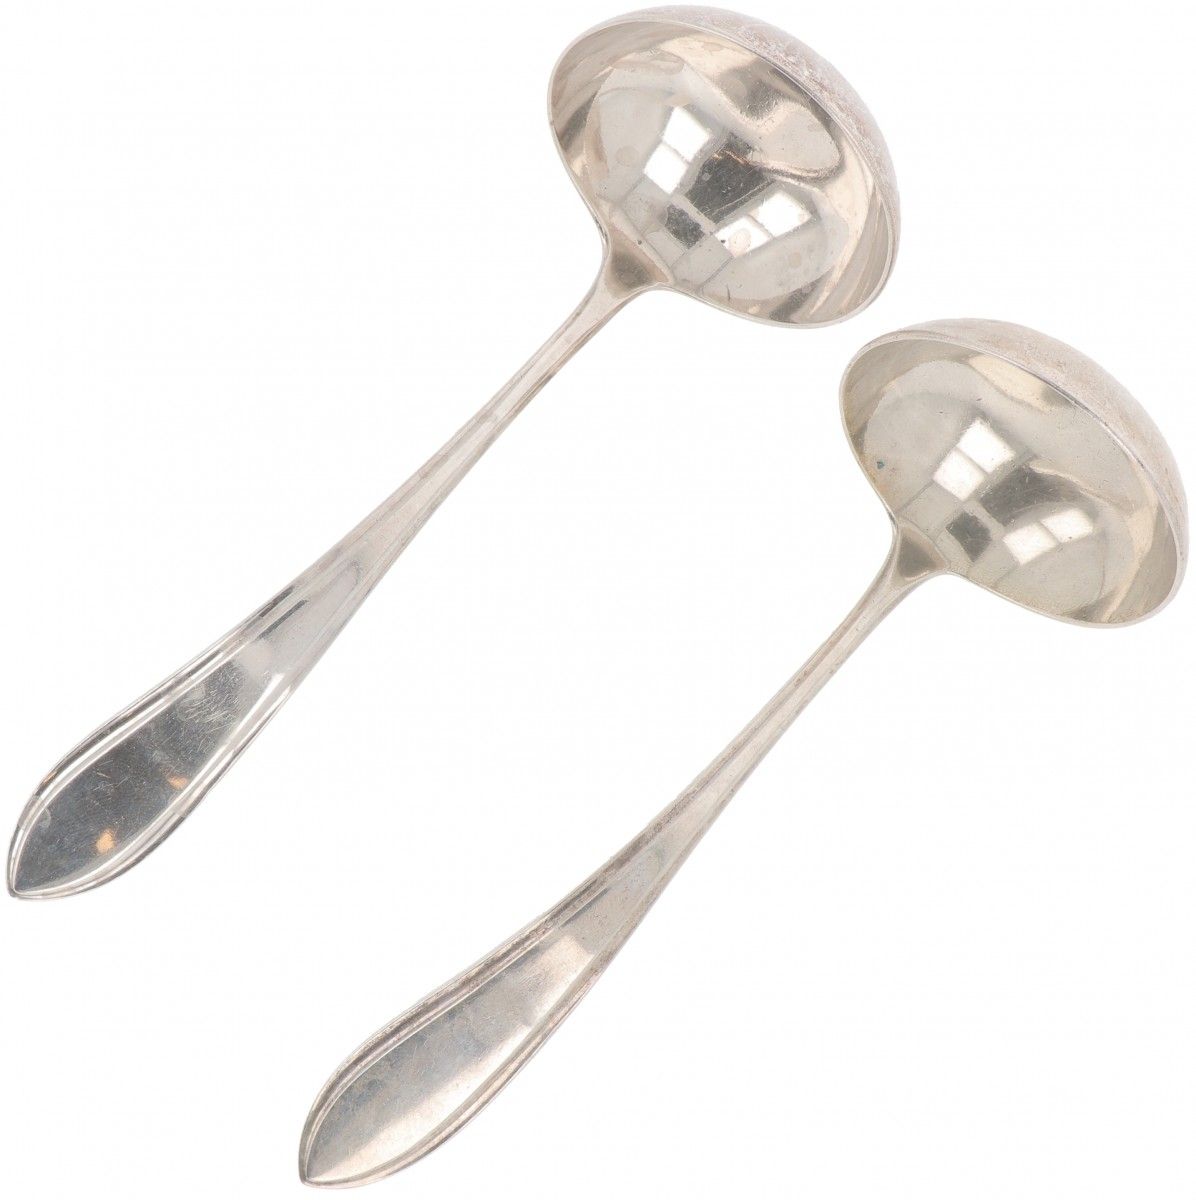 (2) piece set of sauce spoons "Dutch point fillet" silver. "Holländisches Spitzf&hellip;